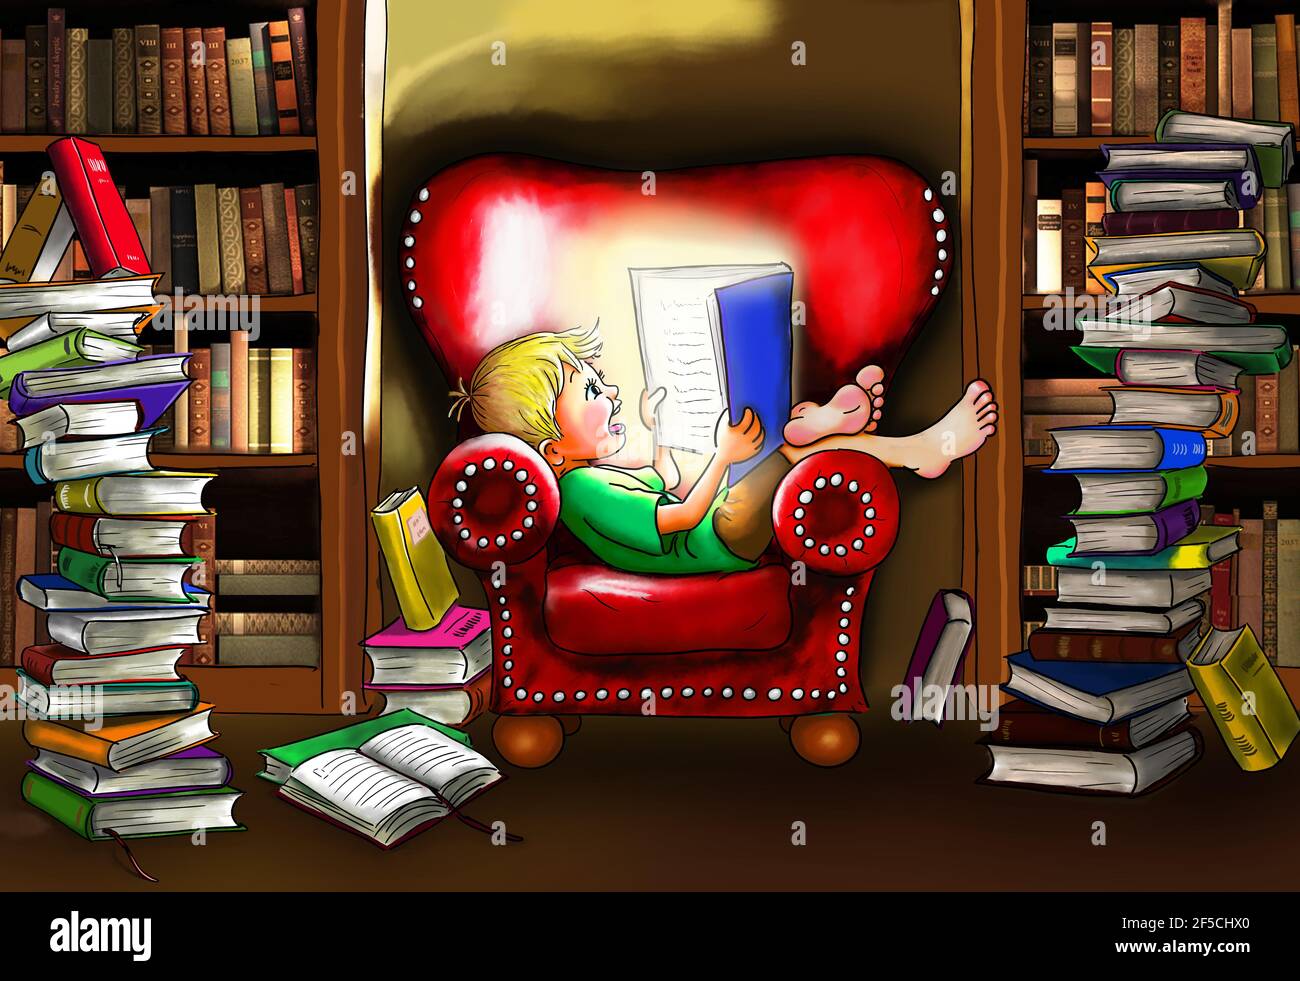 Niño se sienta descalzo cómodamente en un gran sillón de cuero en rojo con un libro en la mano, le está emanando. Lee con entusiasmo y está sonriendo Foto de stock